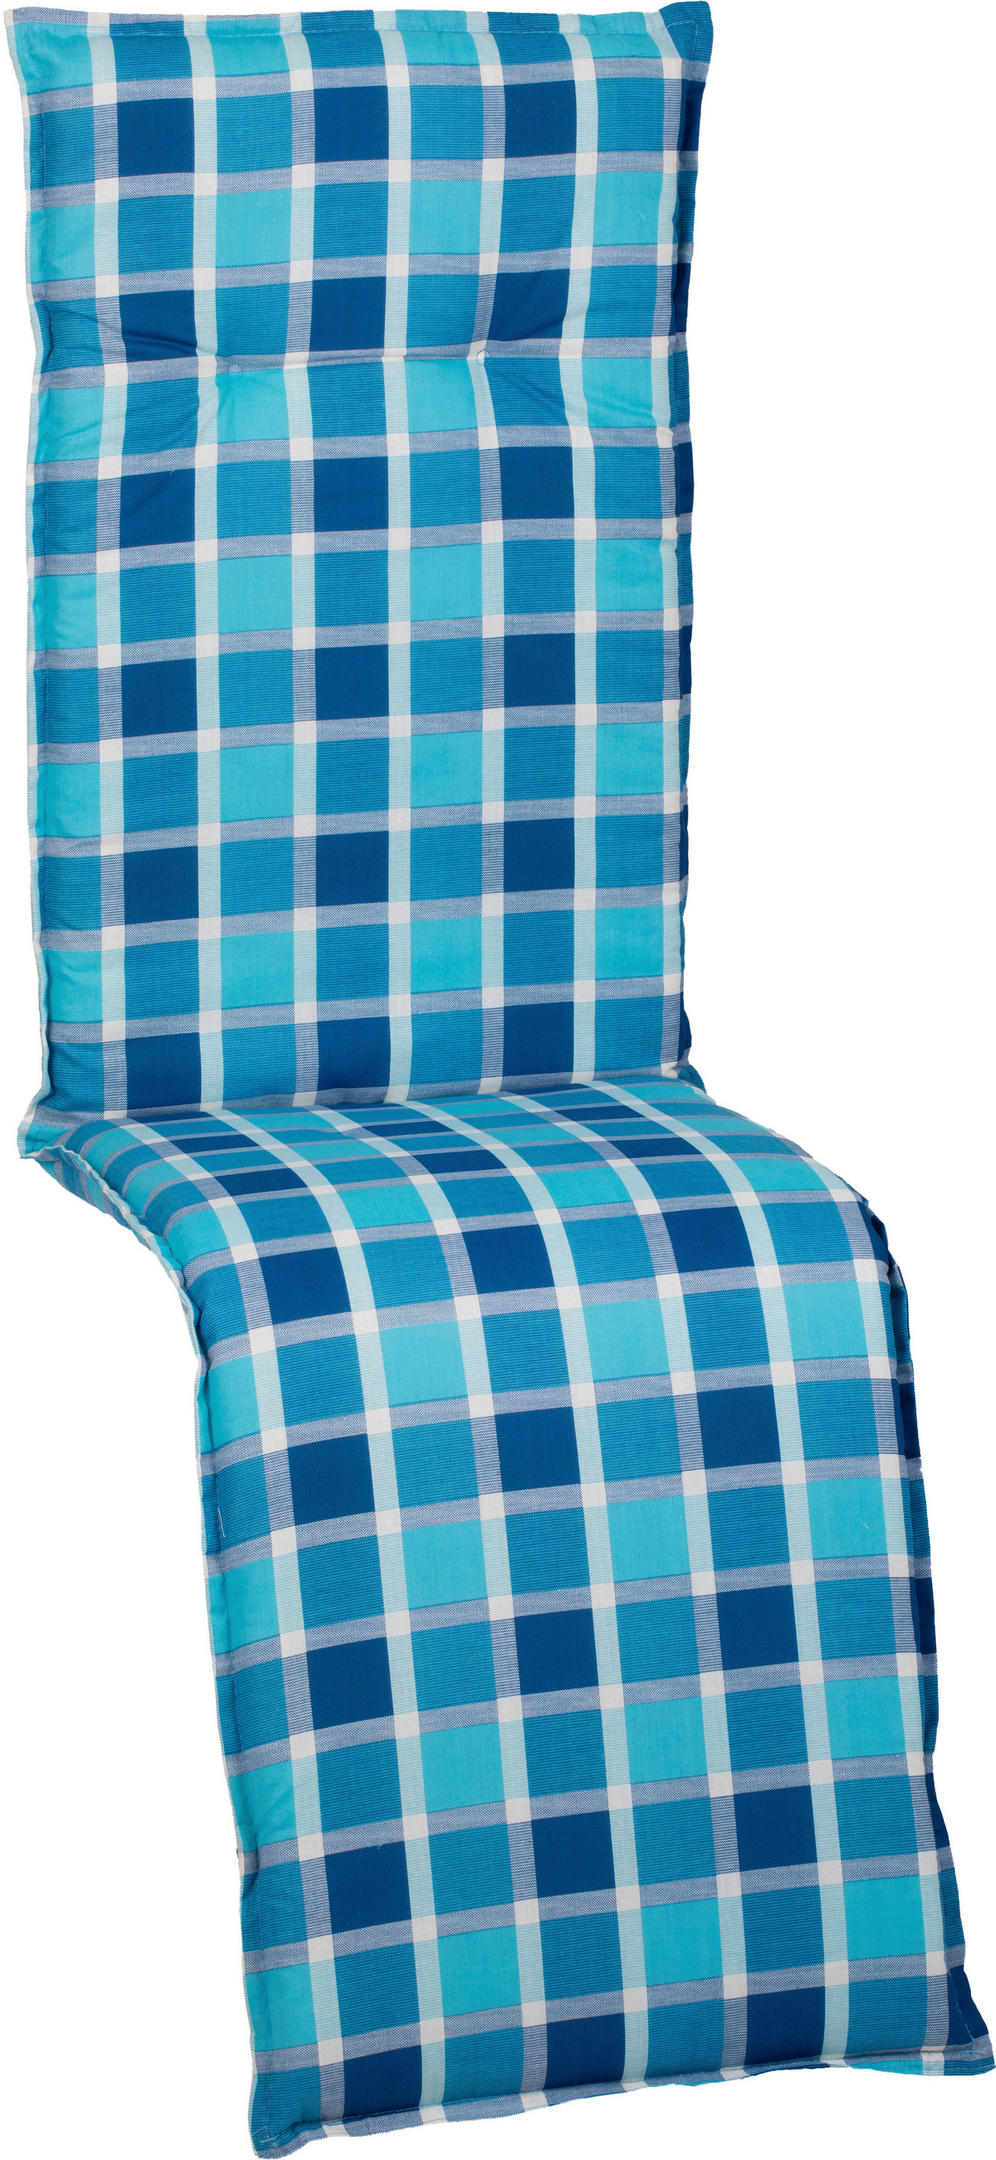 RELAXSESSELAUFLAGE Karo  - Blau, Design, Textil (171/50/6cm)